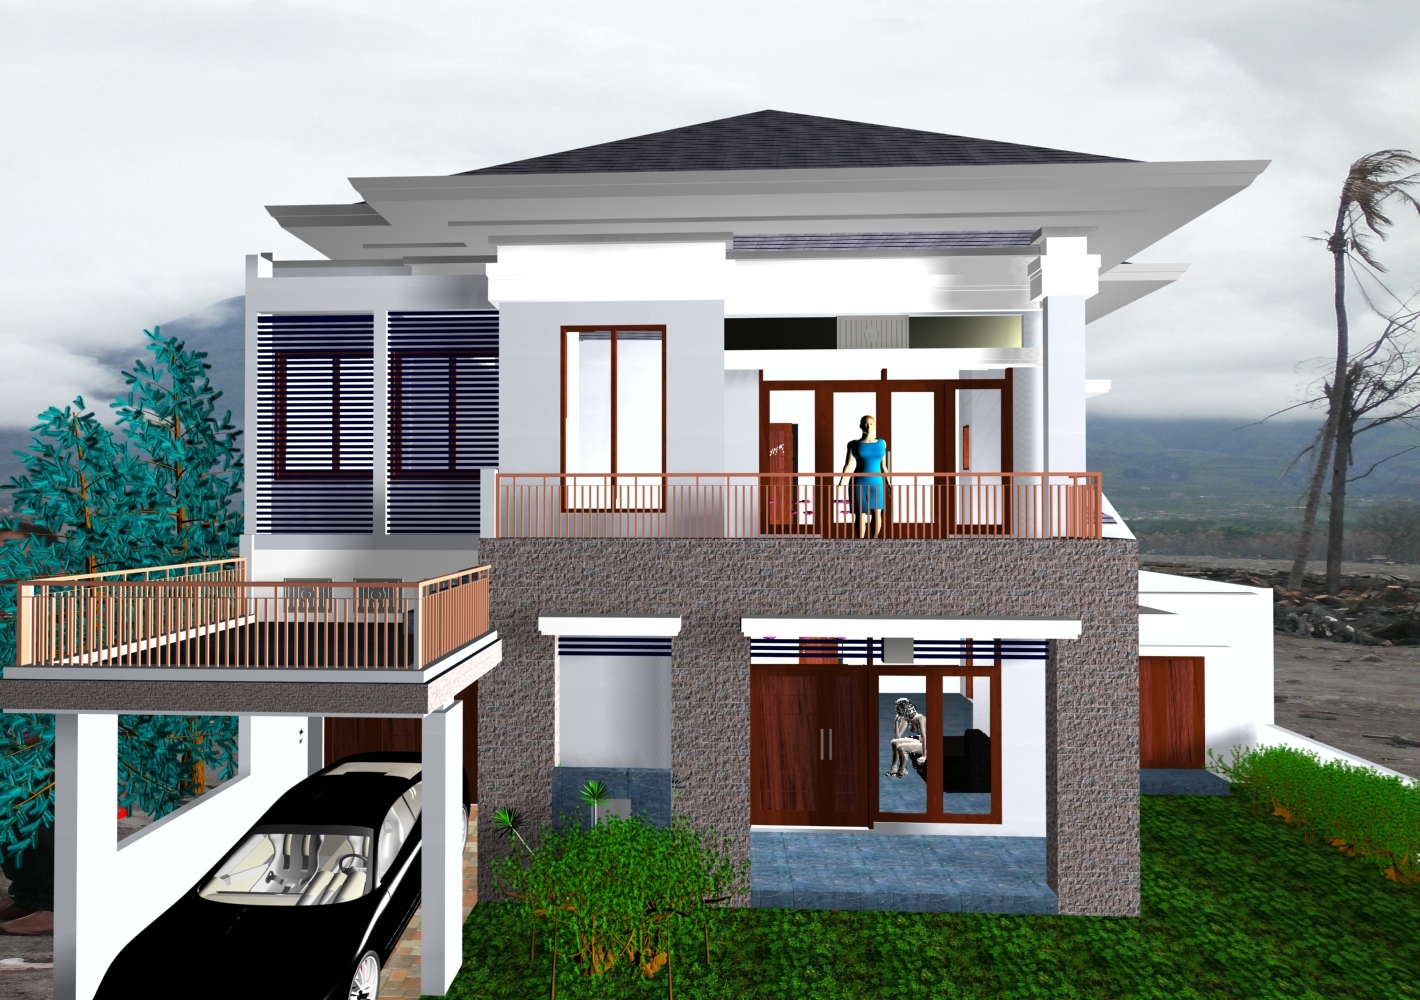 Model Rumah Idaman 2016 - Desain rumah idaman 2016 prathama raghavan 